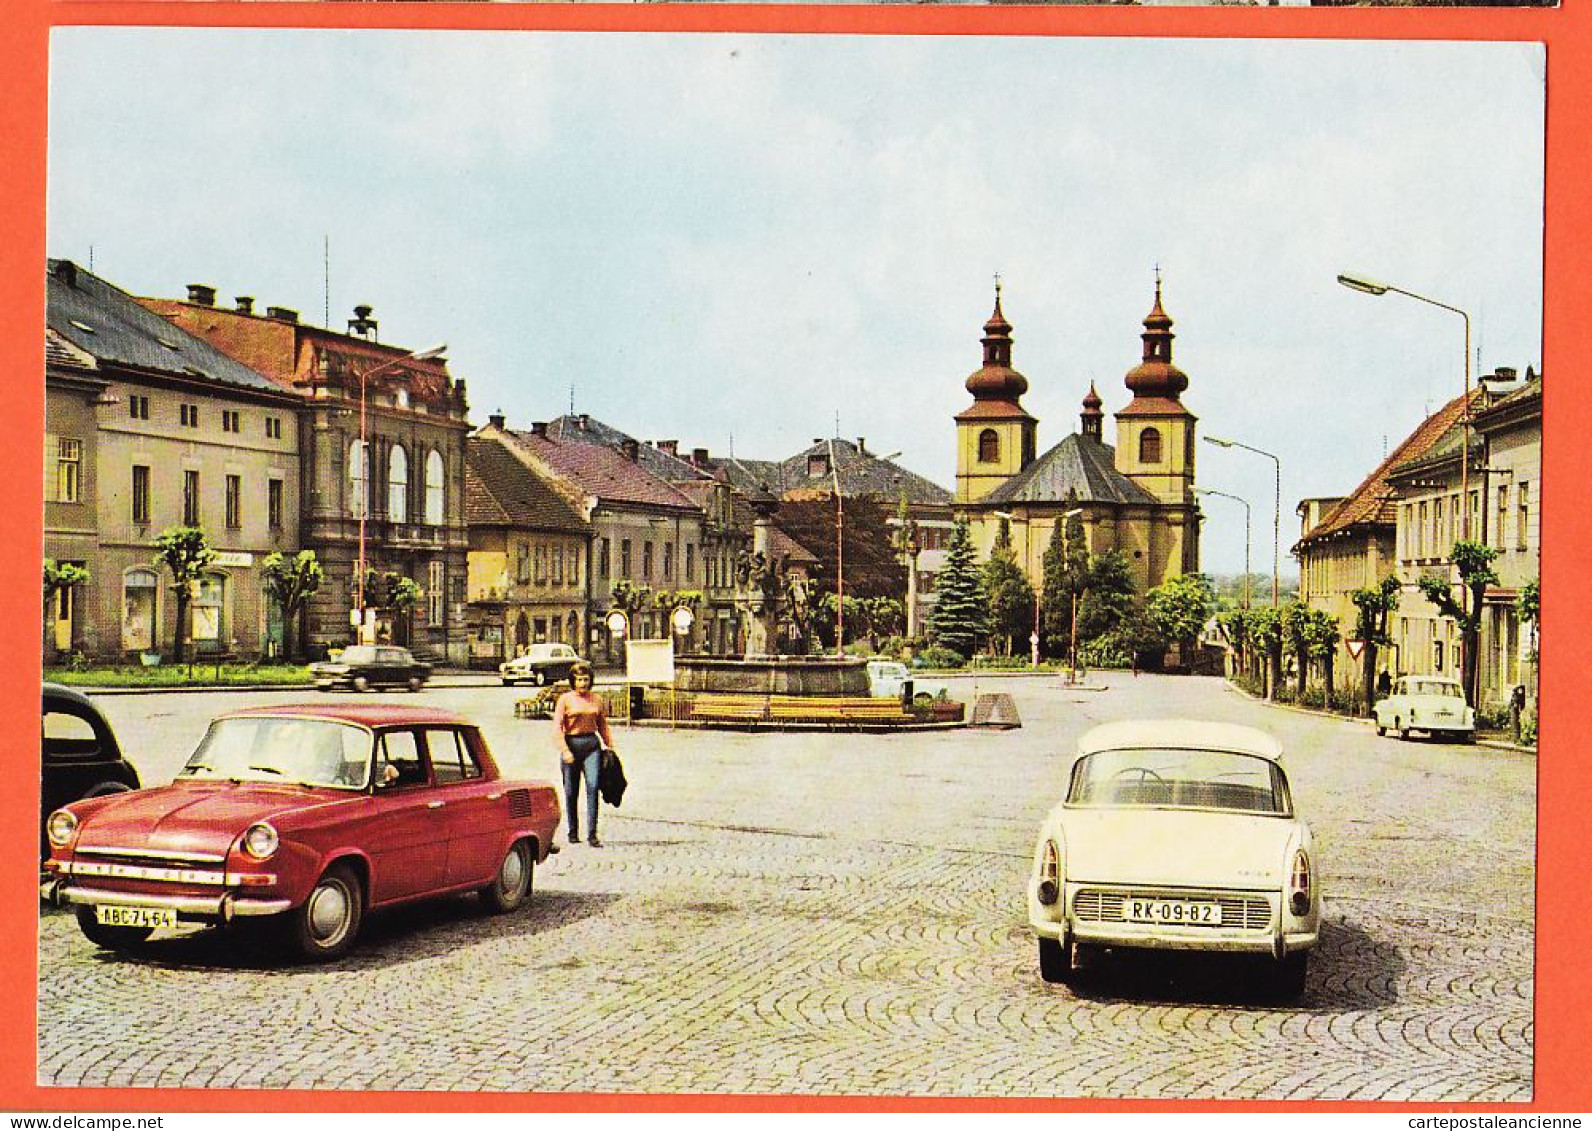 06343 / VAMBERK Tchéquie HUSOVO Namesti Square Stadplatz Automobiles Pays Est 1960s Foto Josef HANUS  - Tchéquie